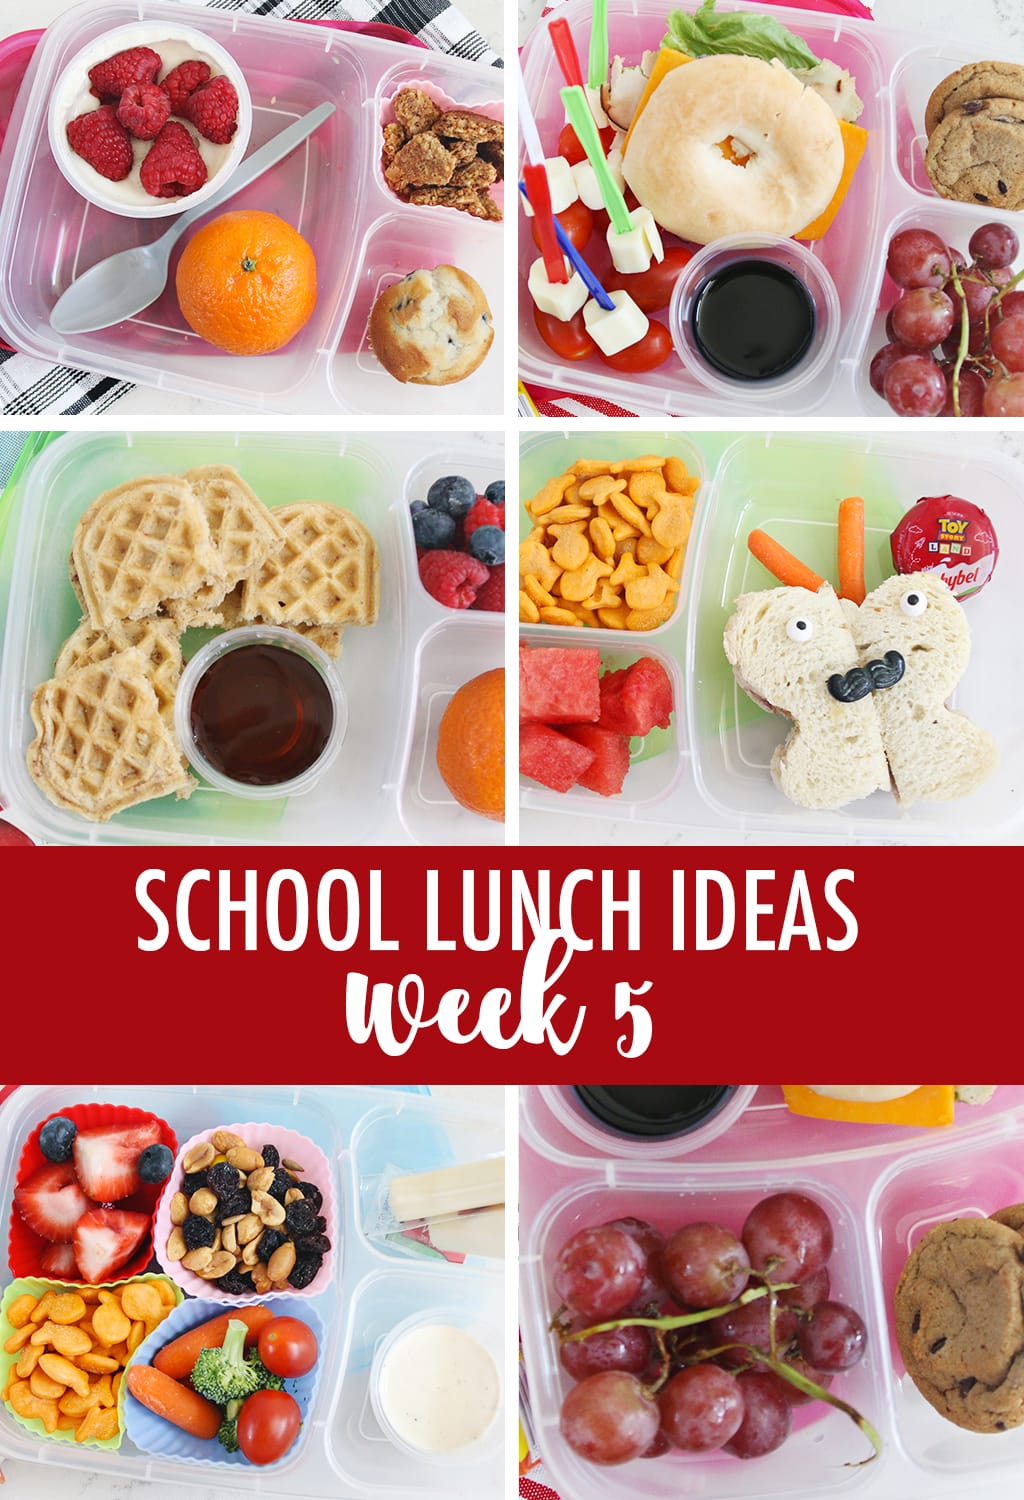 Week 5 School Lunch Ideas